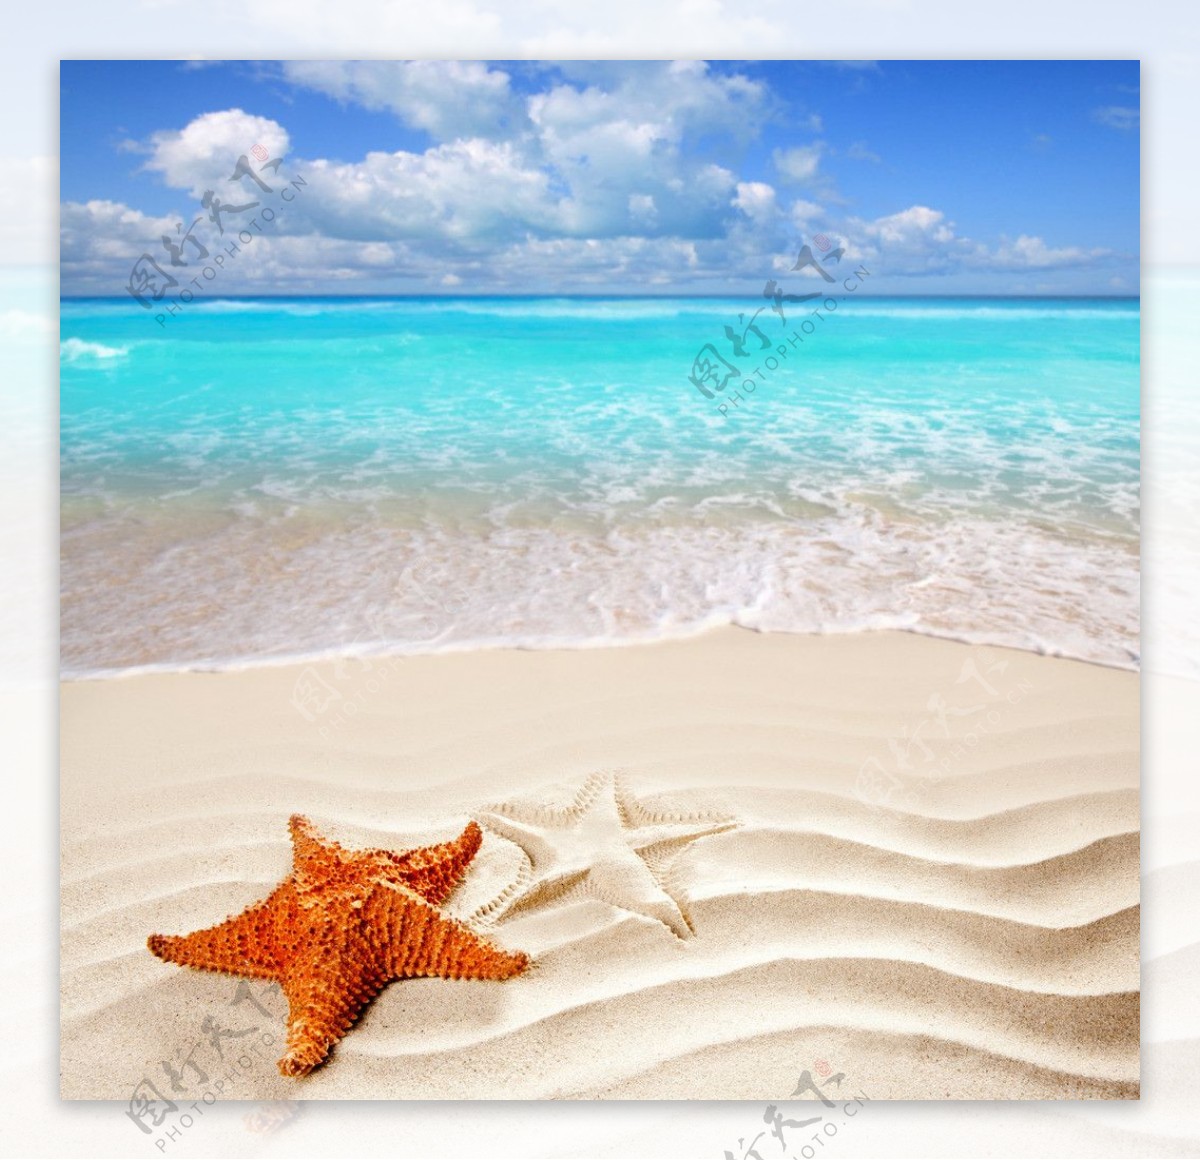 沙滩海星图片